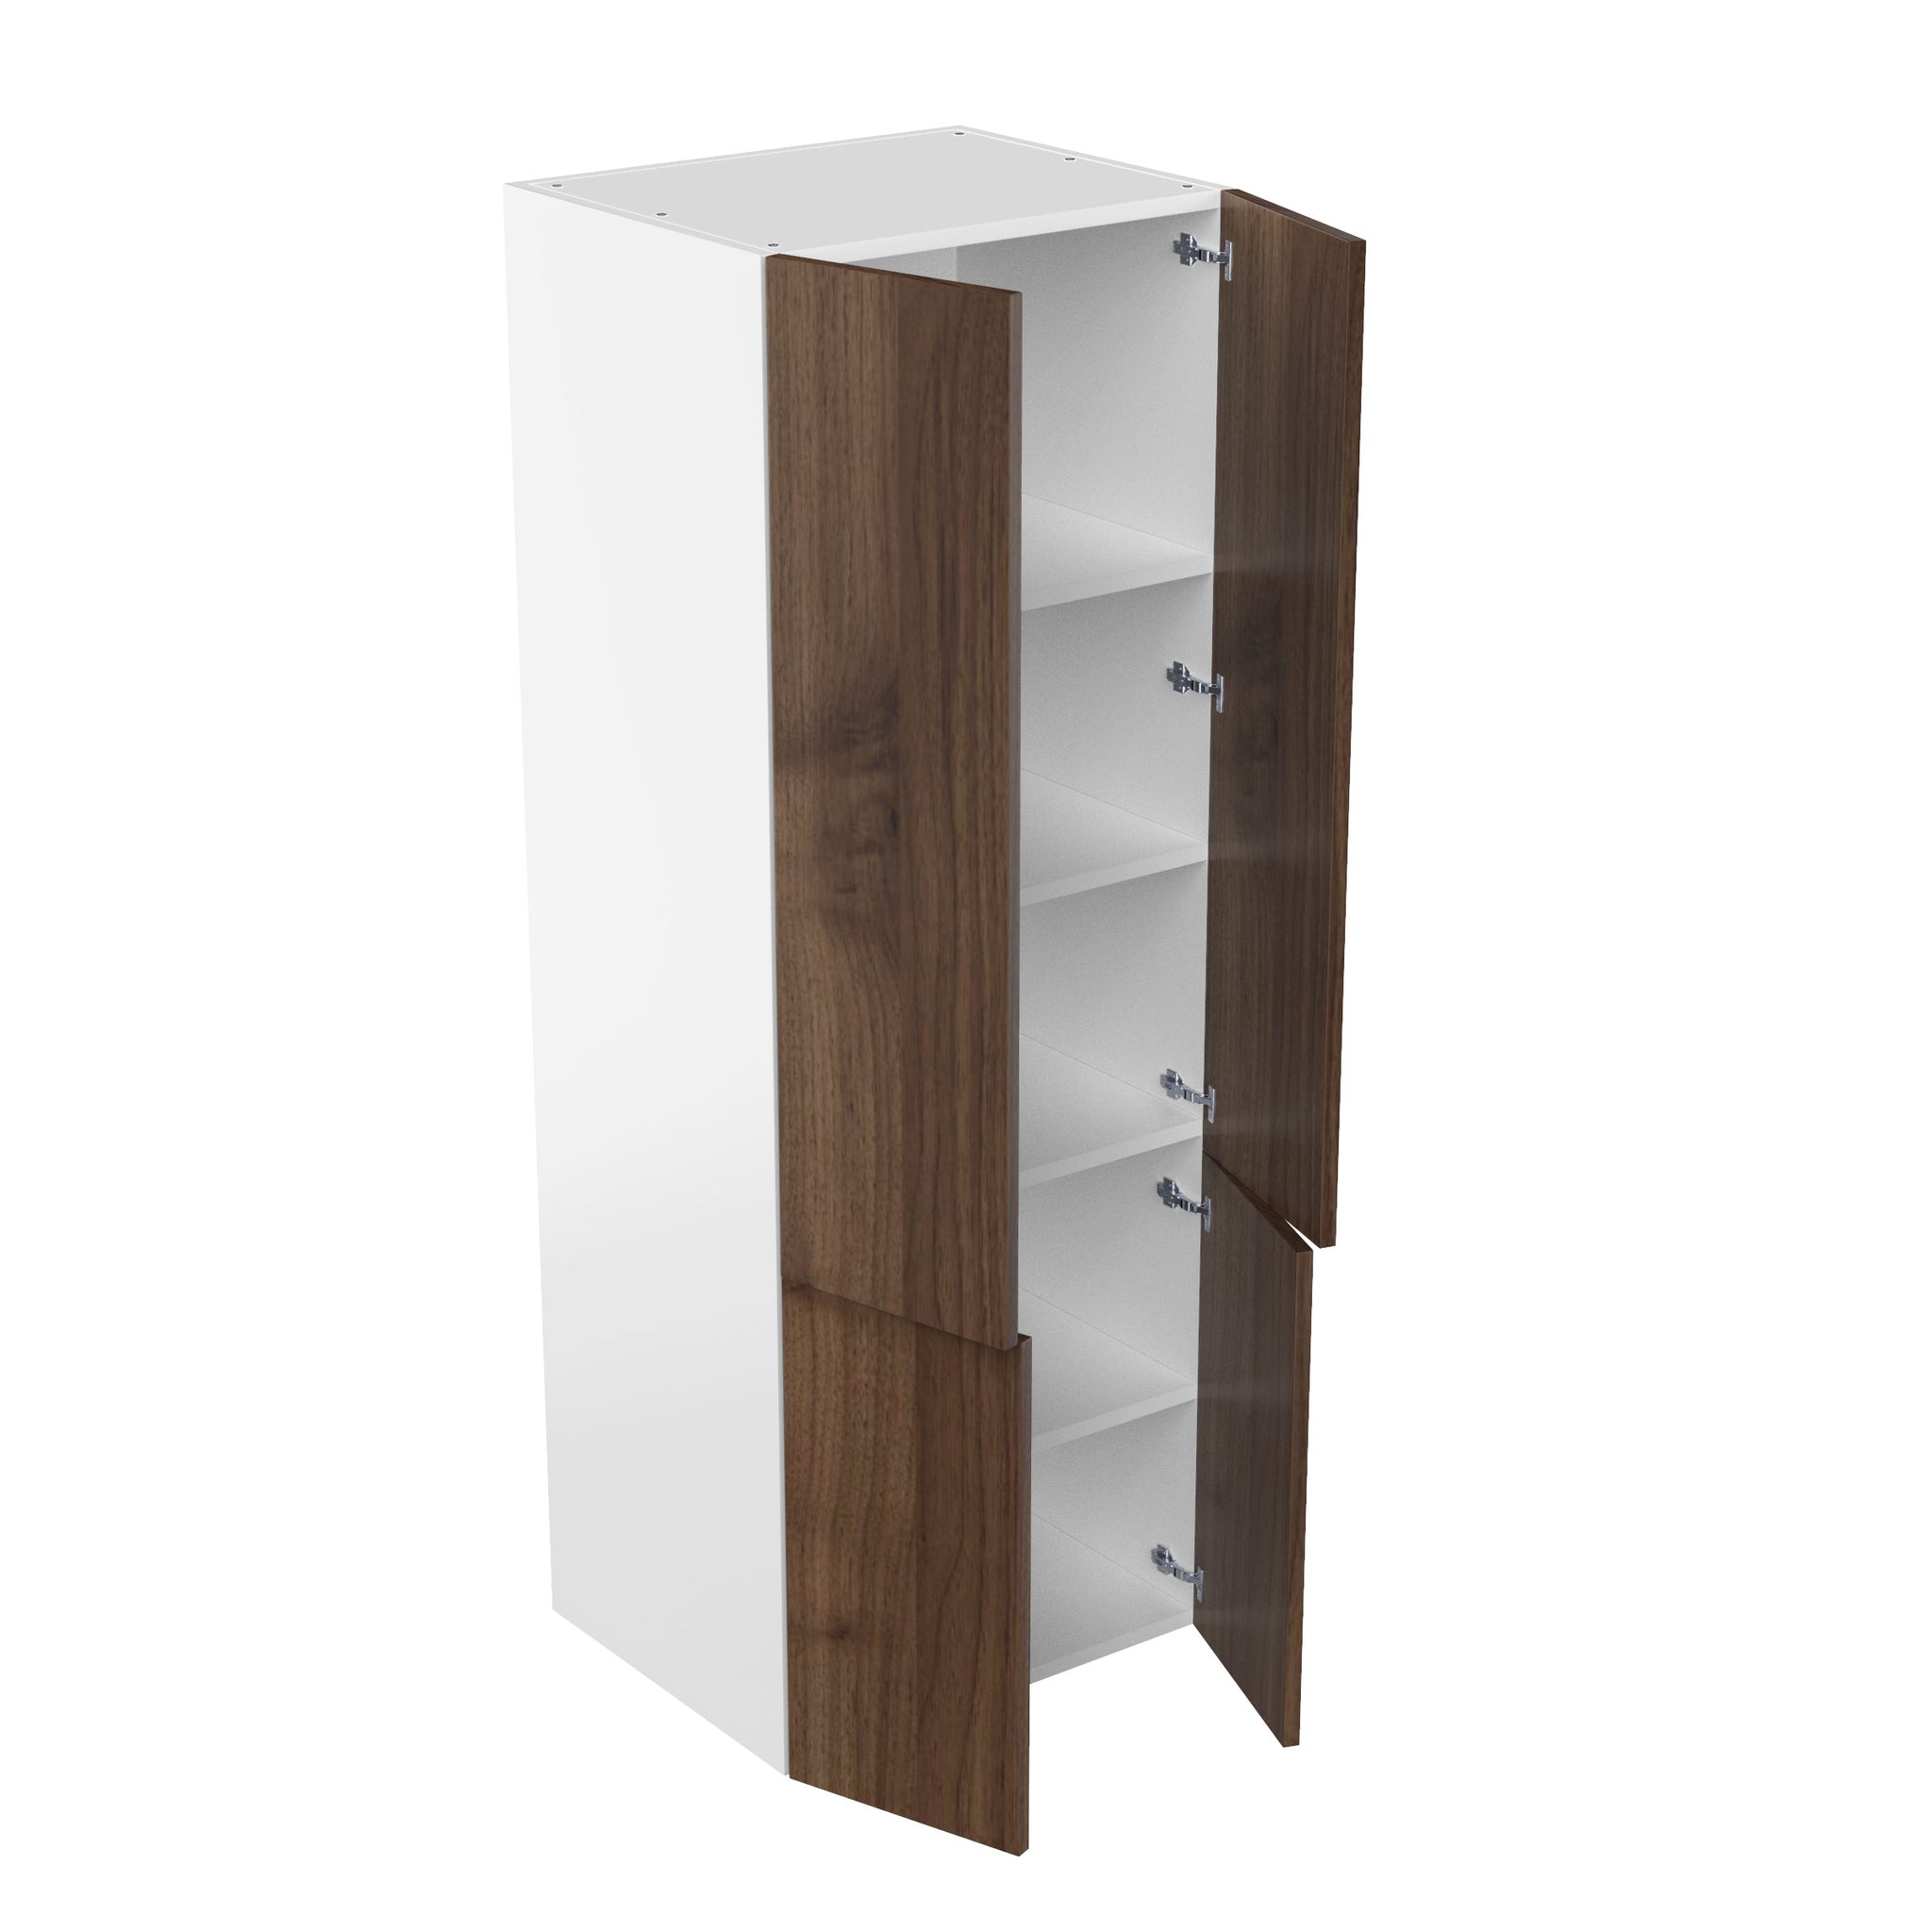 RTA - Walnut - Double Door Tall Cabinet | 24"W x 90"H x 24"D